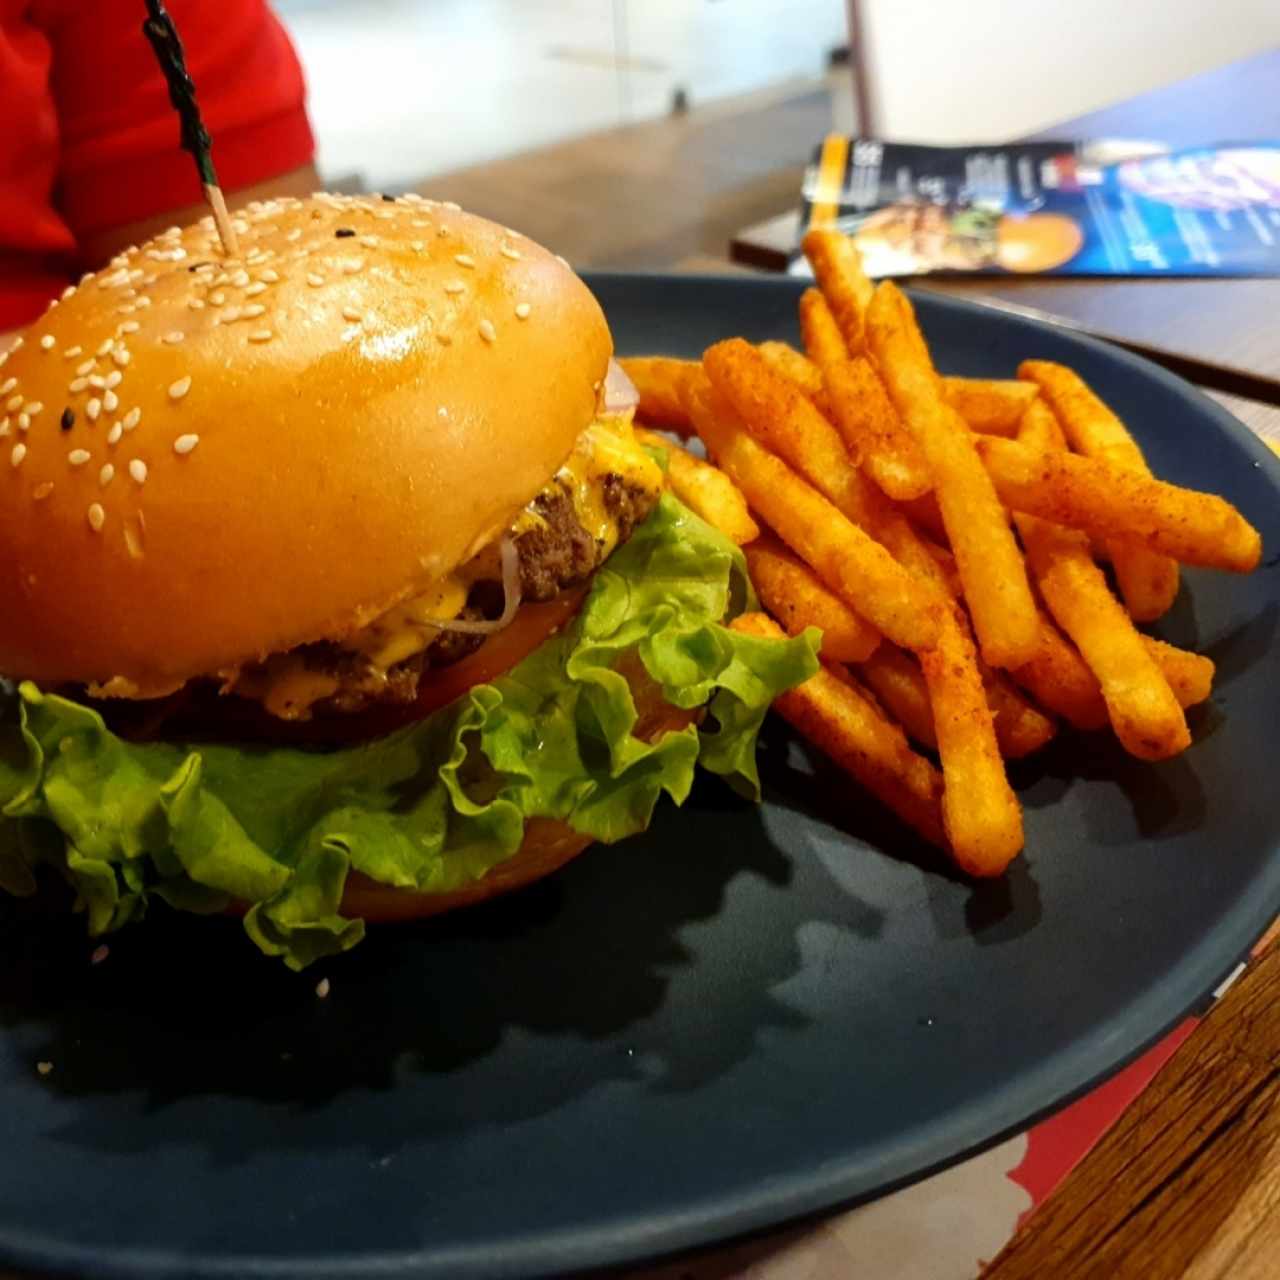 Burgers Clásicas - Retro Burger Clásica